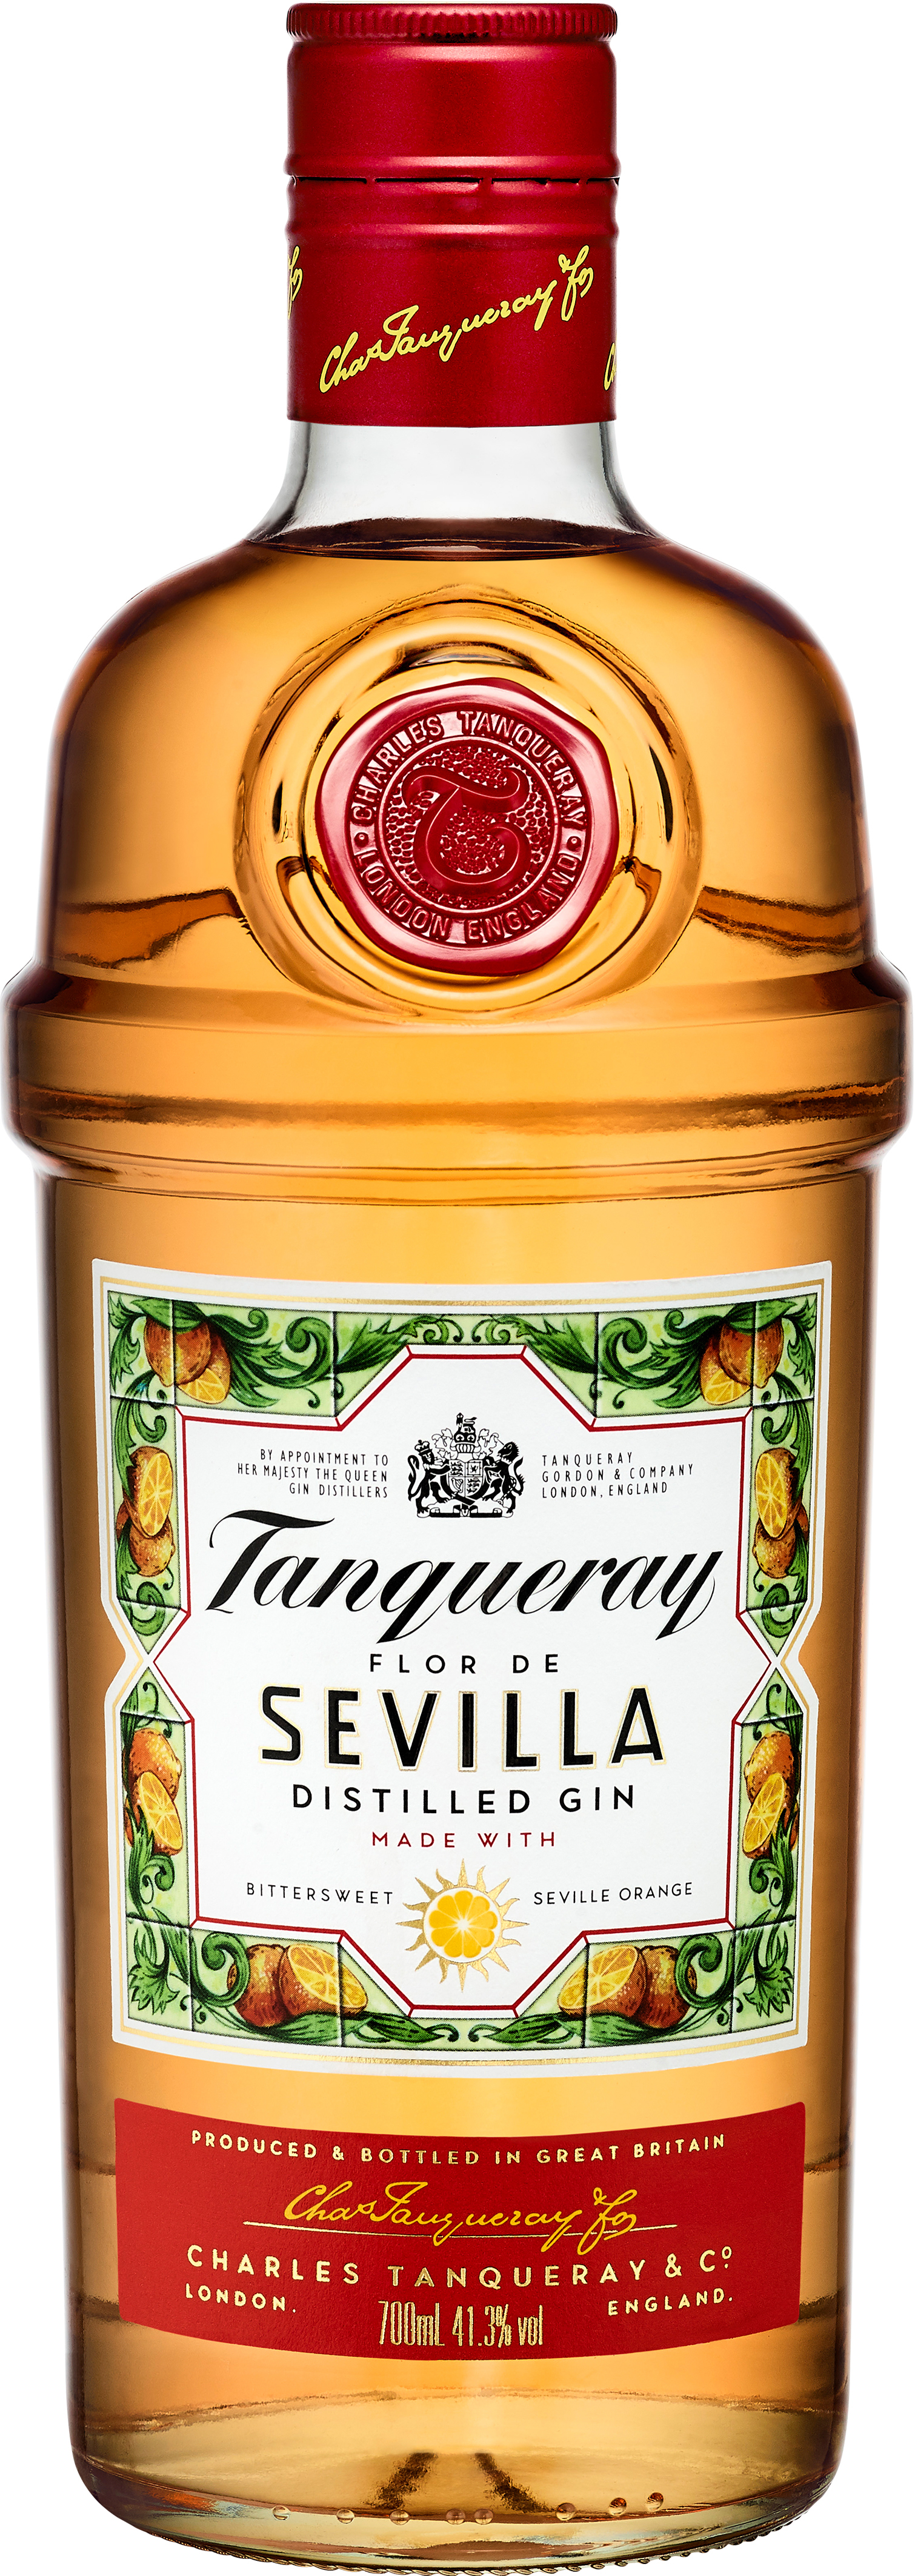 Tanqueray Flor de Sevilla Gin 41.3% 